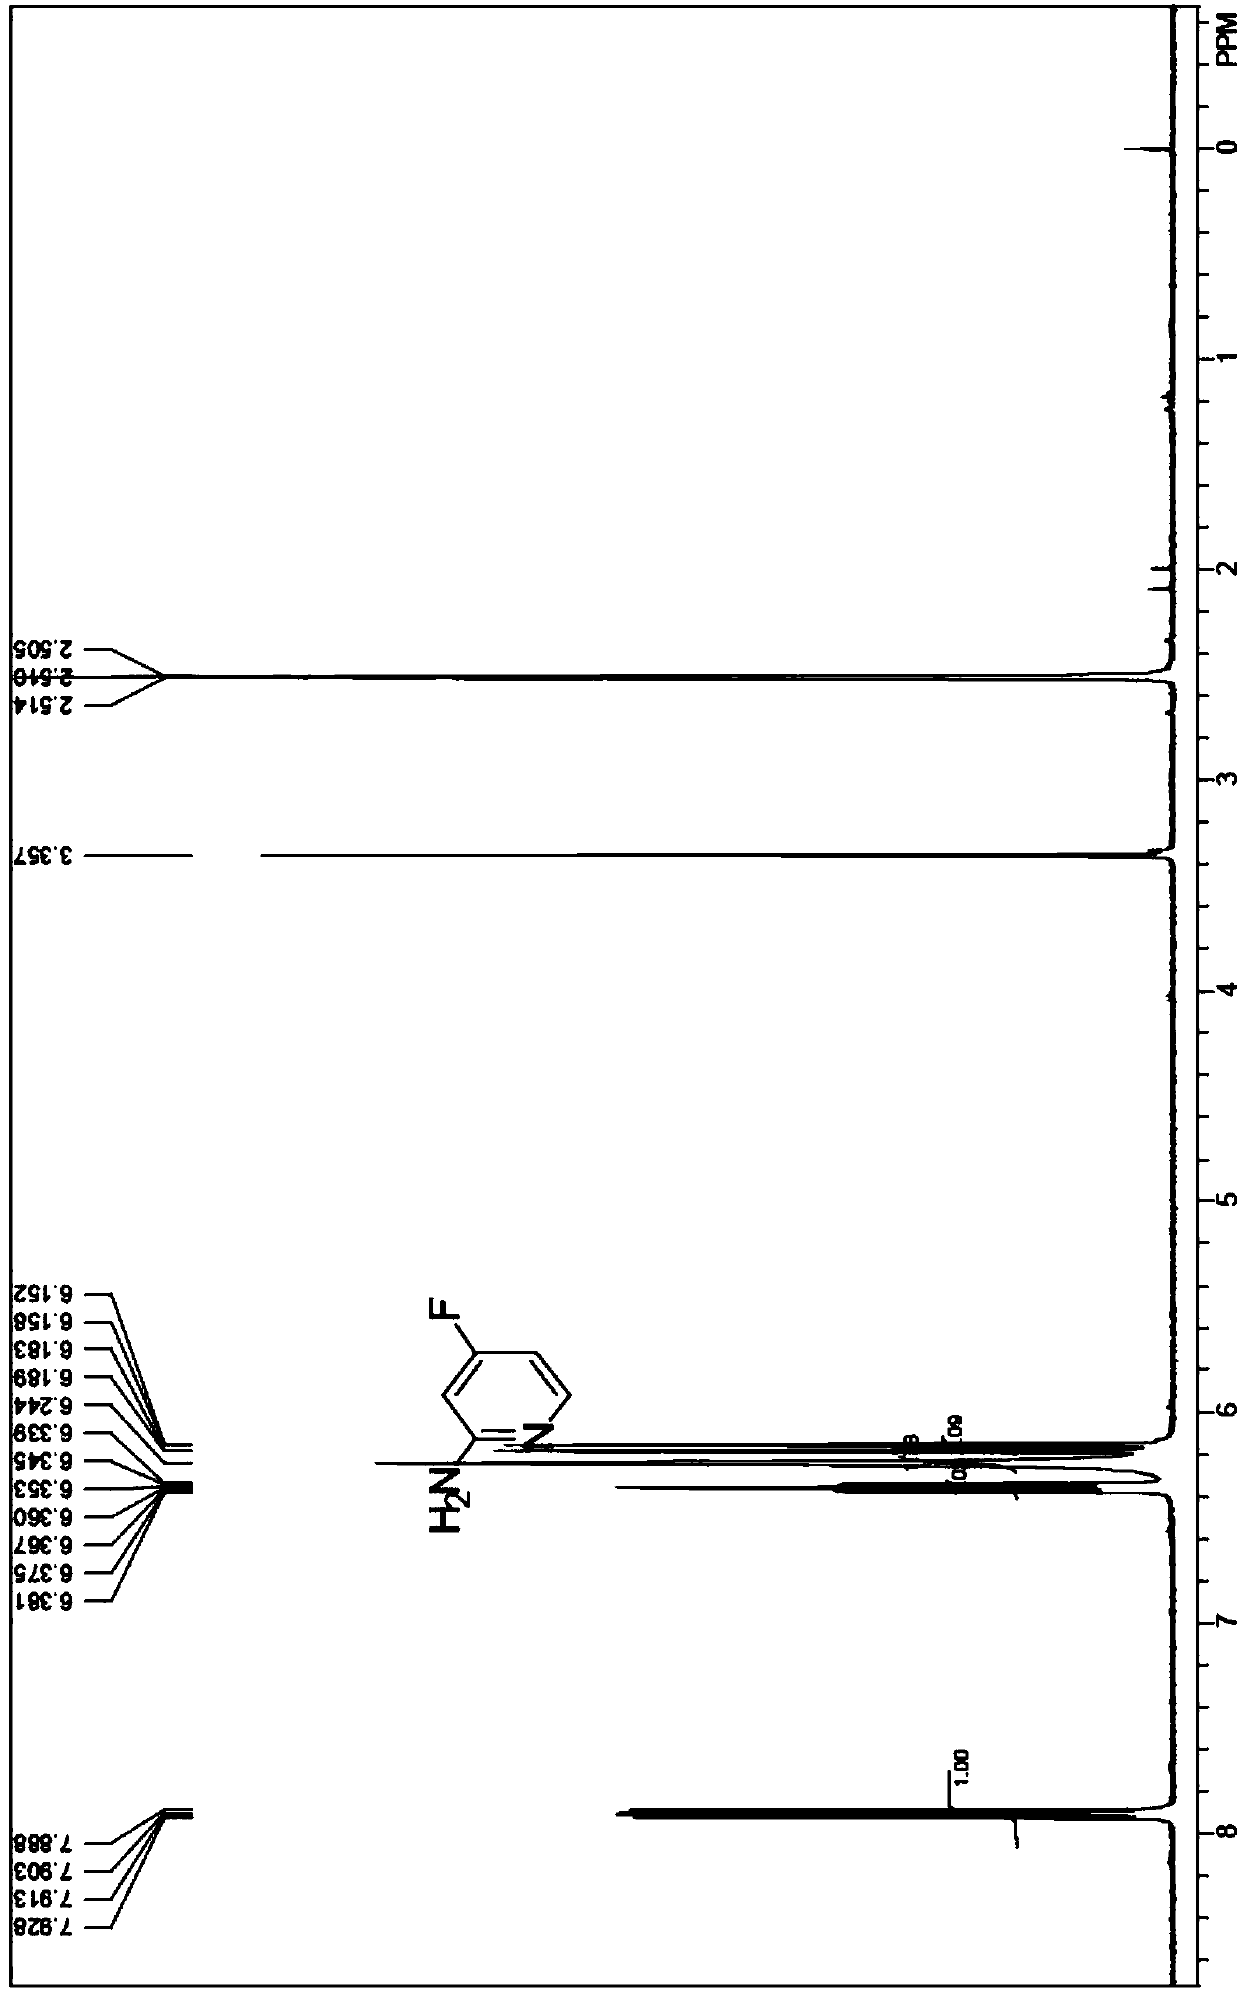 Synthesis method of 2-amino-4-fluoropyridine